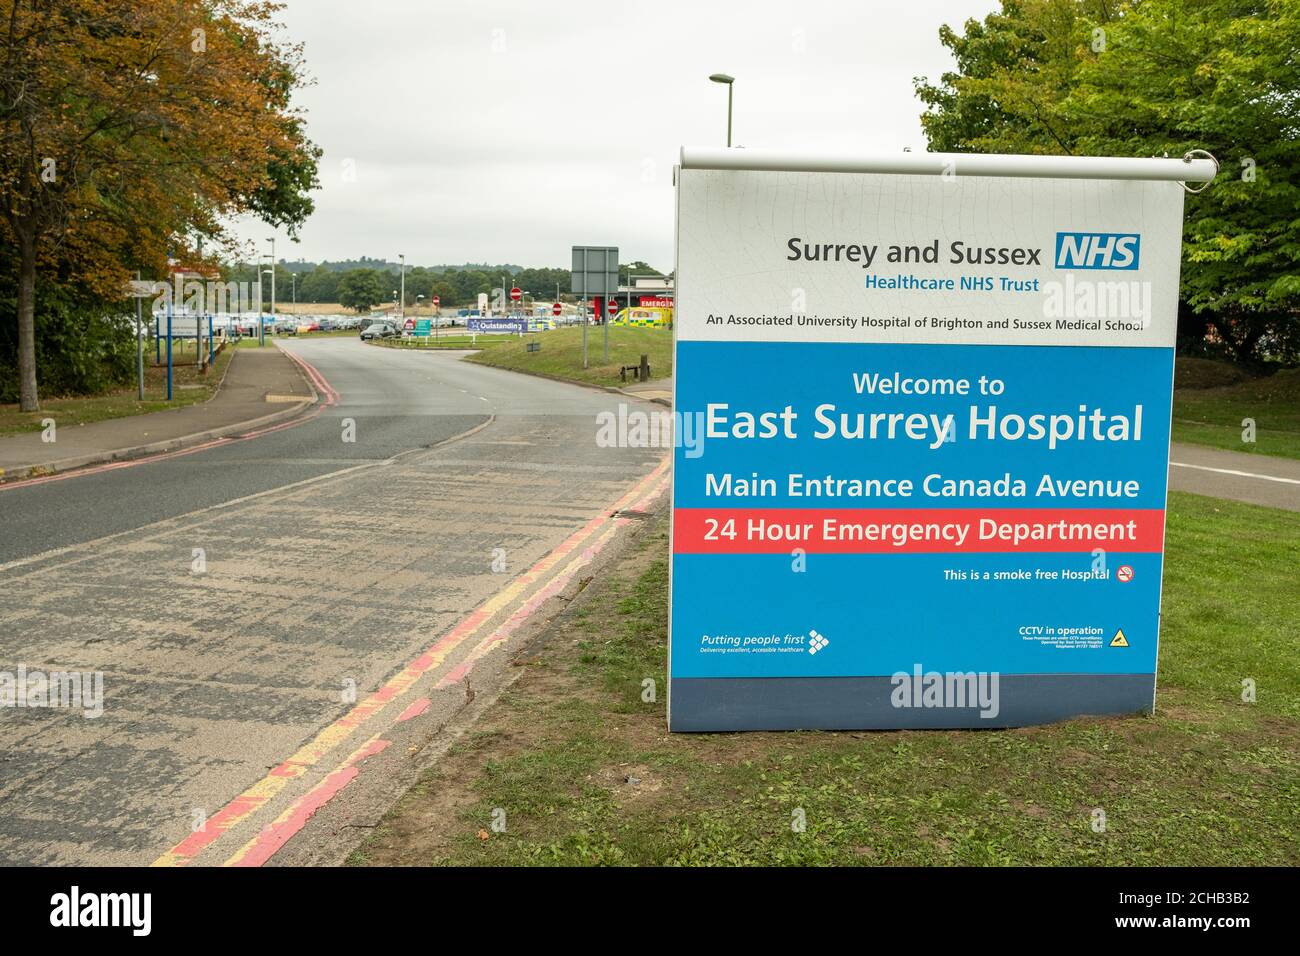 East Surrey Hospital, NHS Hospital à Surrey, dans le sud-est de l'Angleterre Banque D'Images